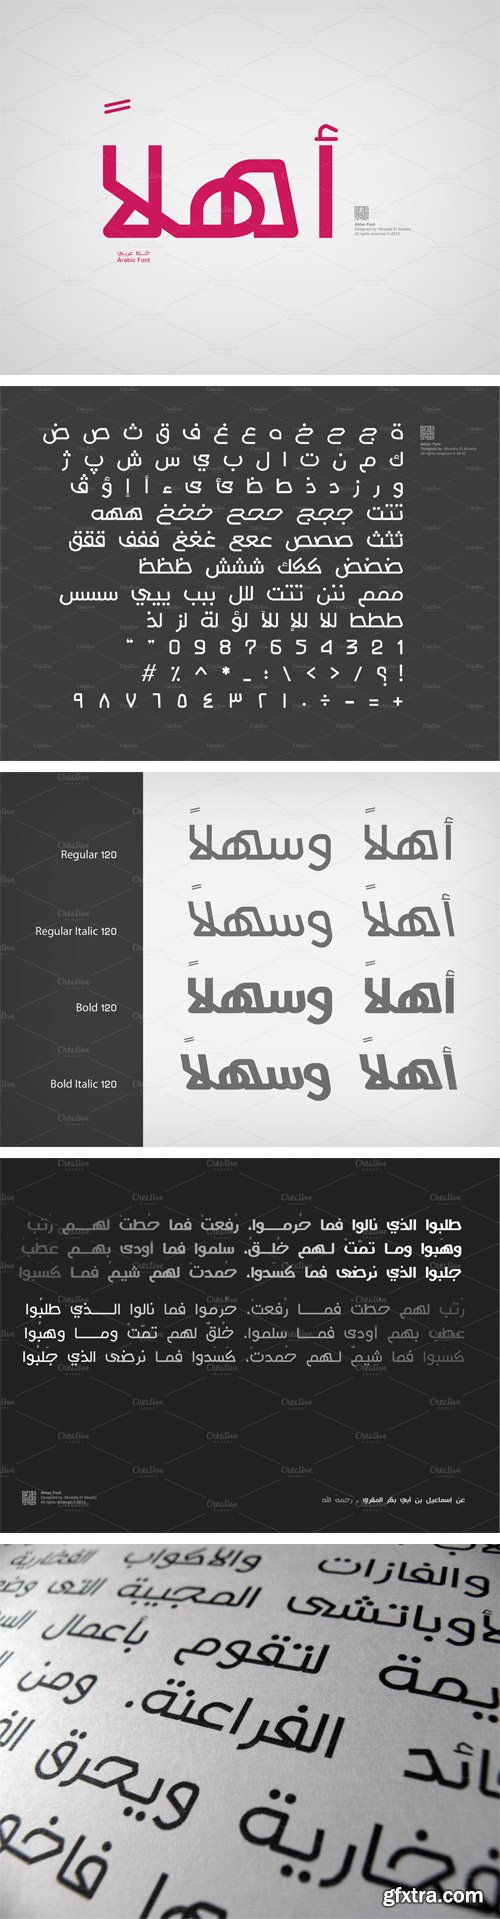 Ahlan Font Family - 4 Fonts for $20